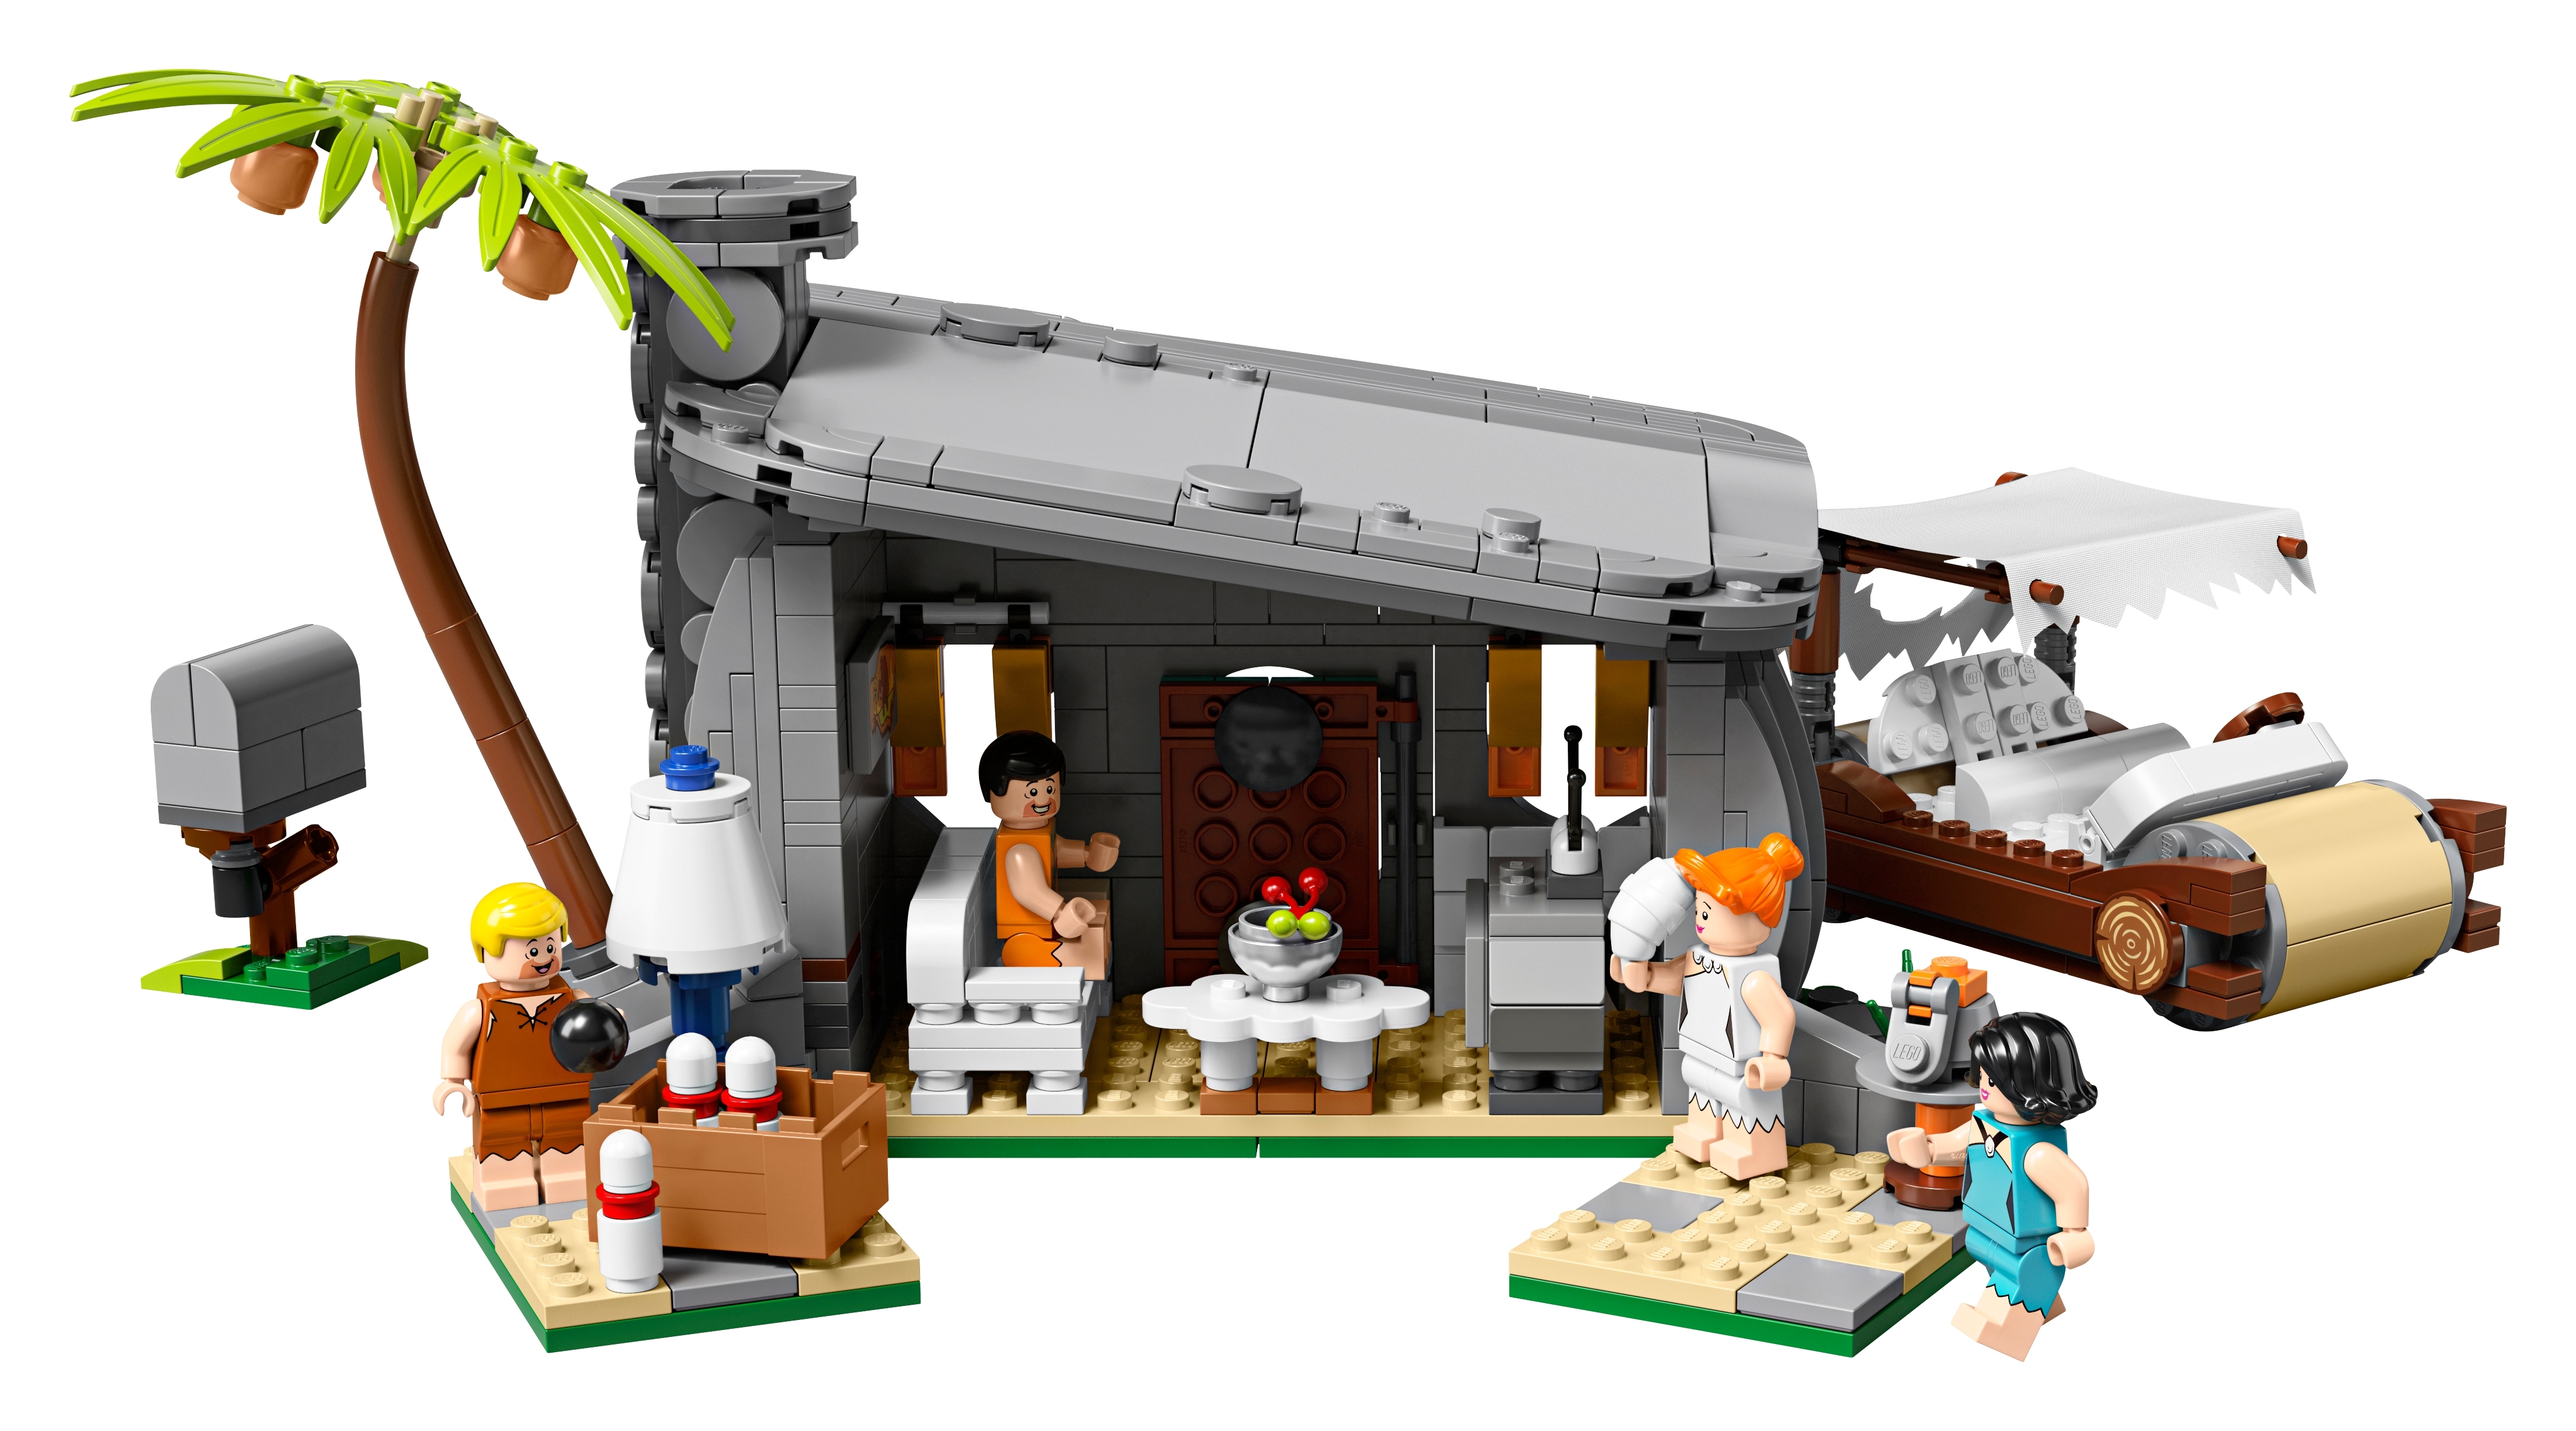 Lego Die Flintstones Ideen Set 21316-NAGELNEU & OVP Rentner Frei Post